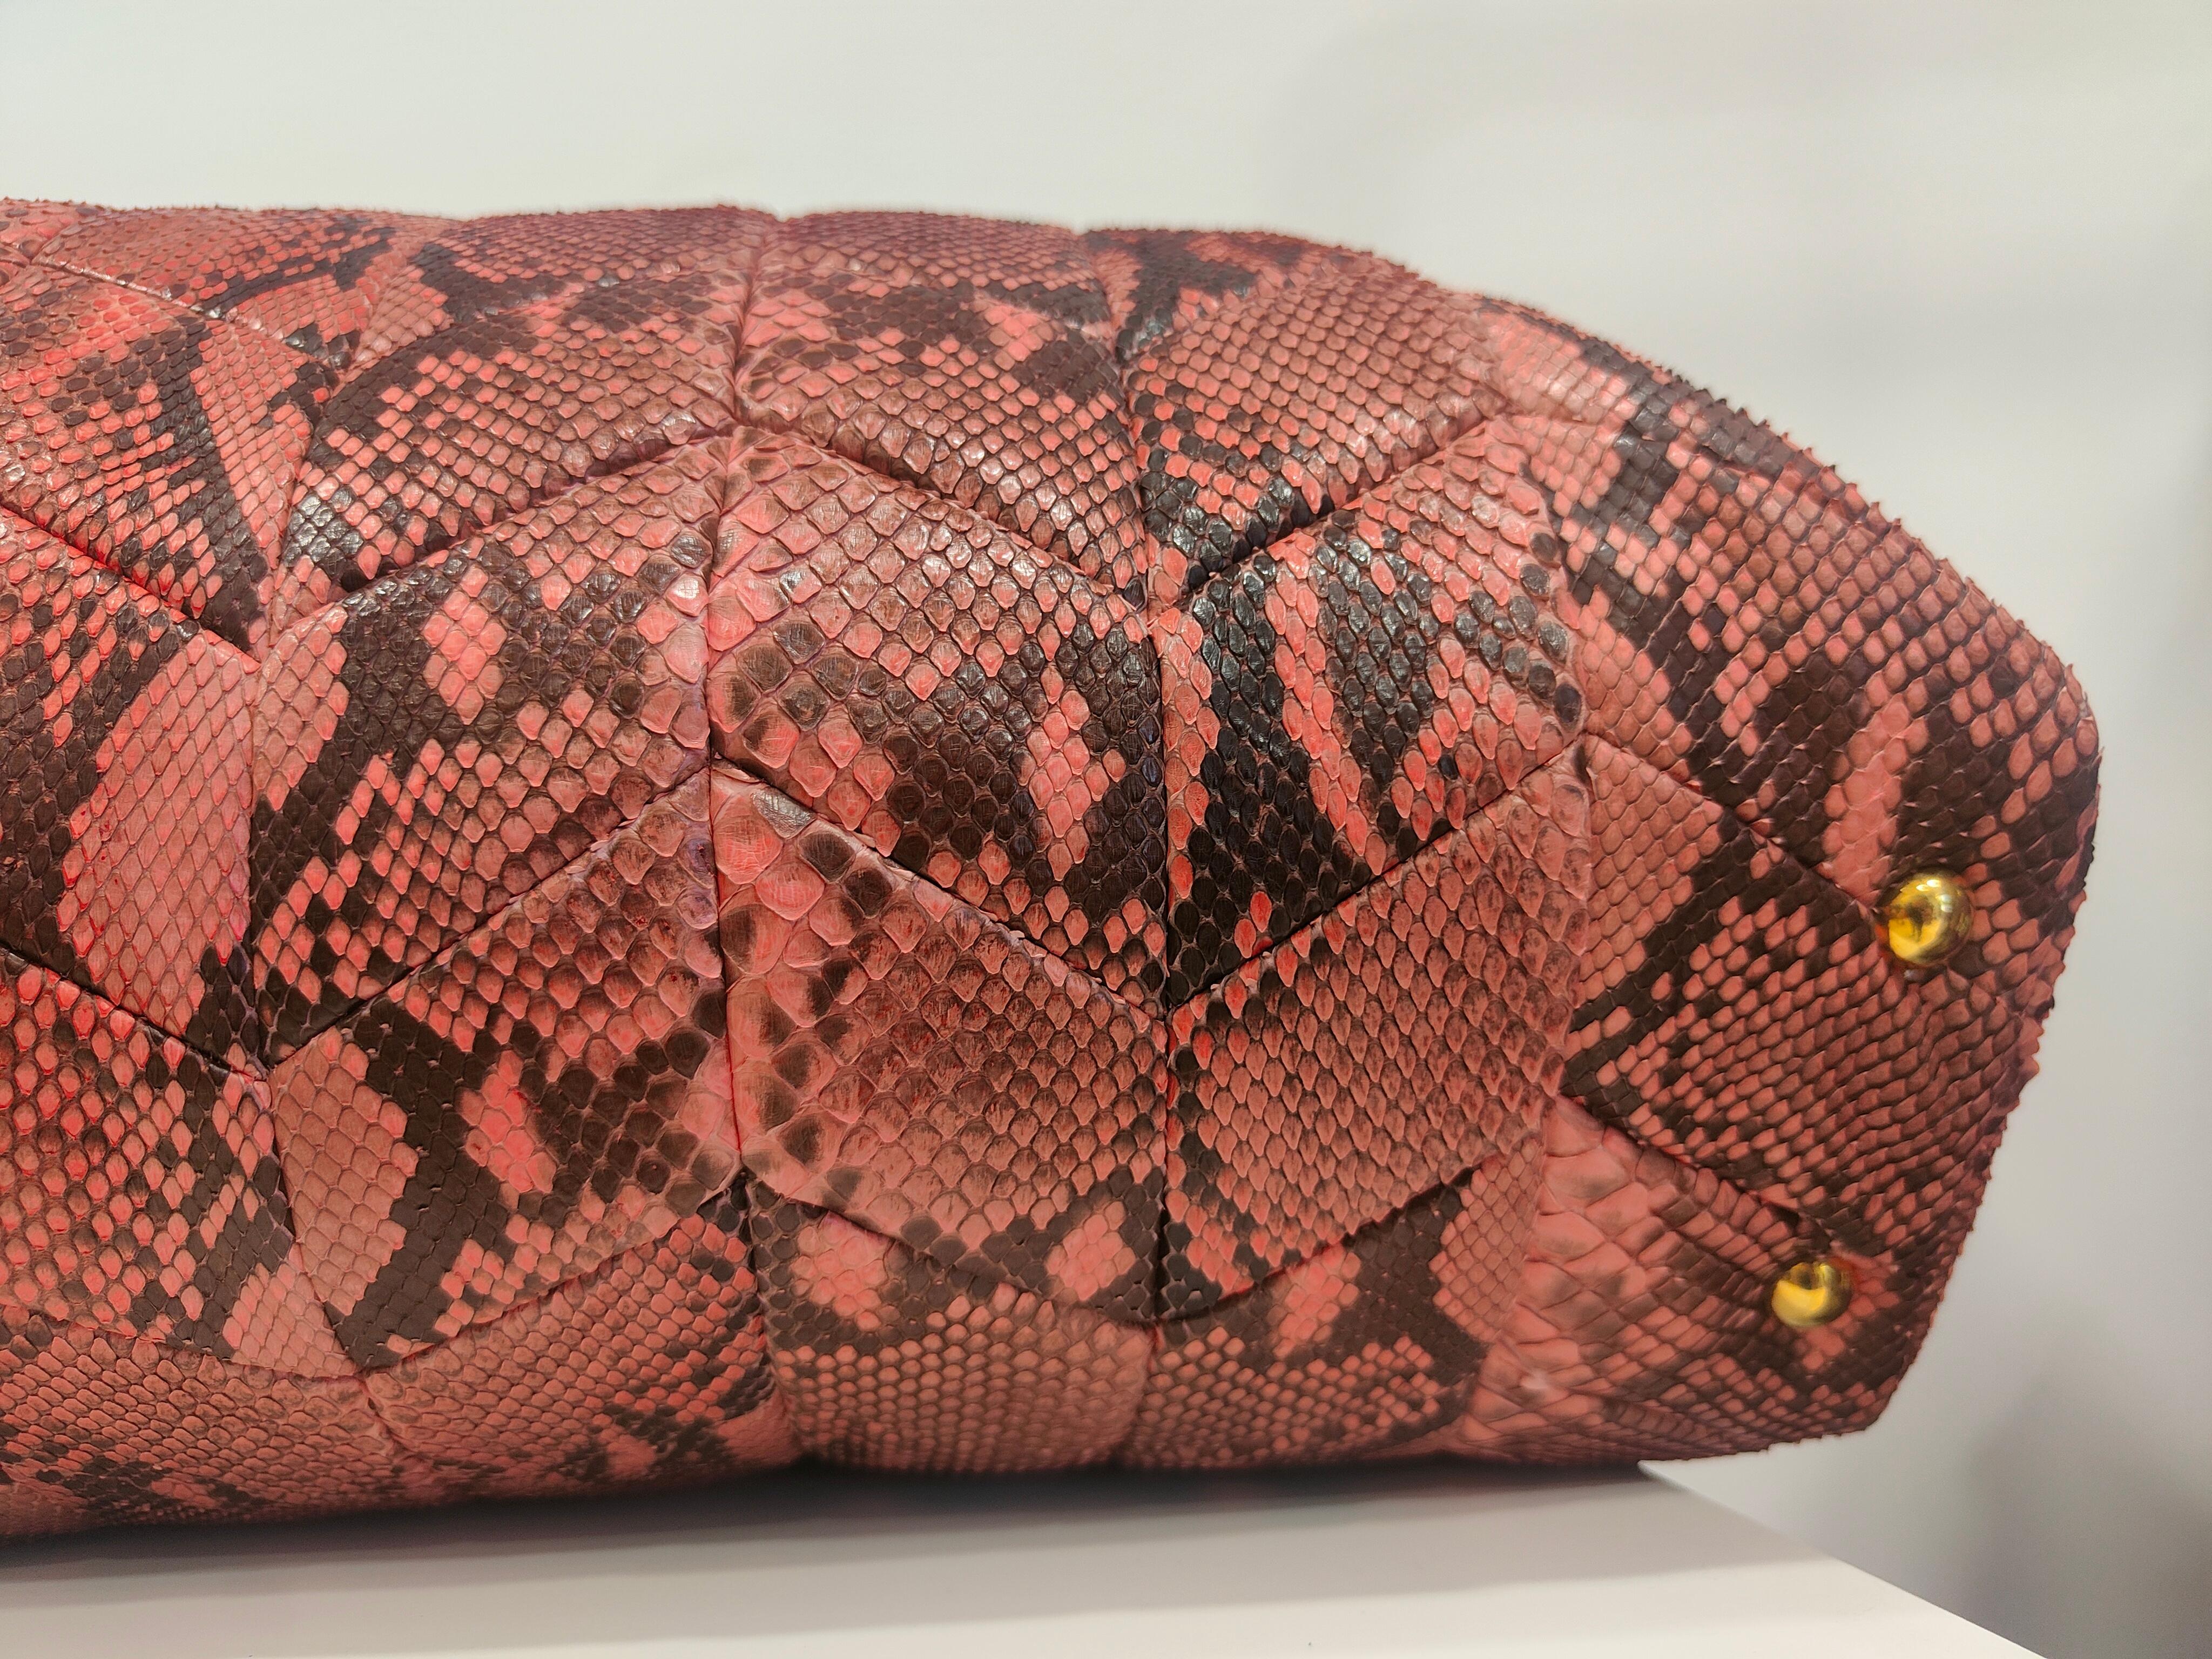 Miu Miu Red Pink python skin Shoulder handlebag NWOT
Totally made in Italy
Measurements: 43*31 cm
Removable shoulder strap